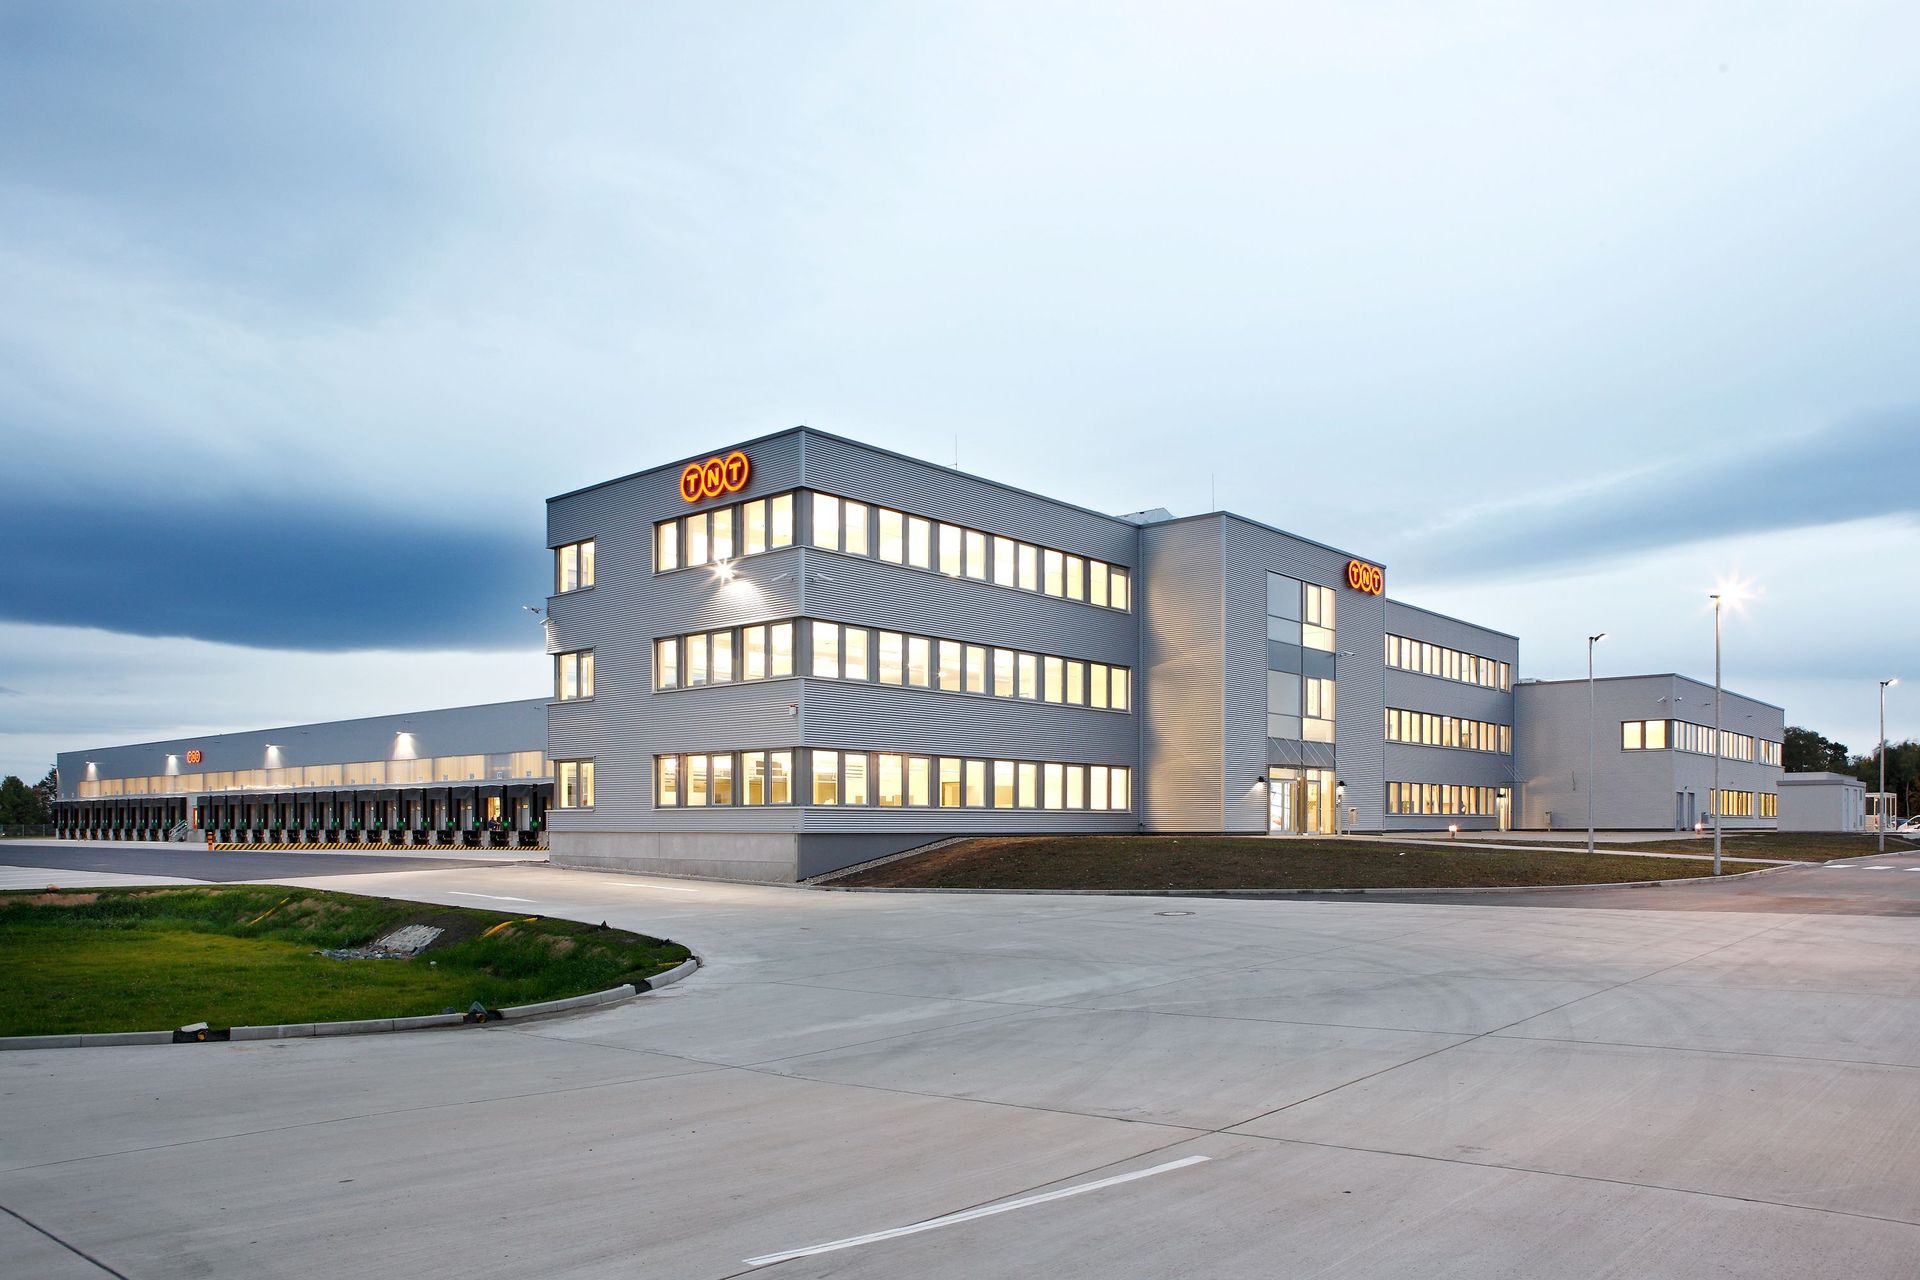 Logistikzentrum am Flughafen Hannover-Langenhagen, Niedersachsen von dem holländische Logistikunternehmen TNT Express- Außenansicht des Verwaltungsgebäudes und der Logistikhalle